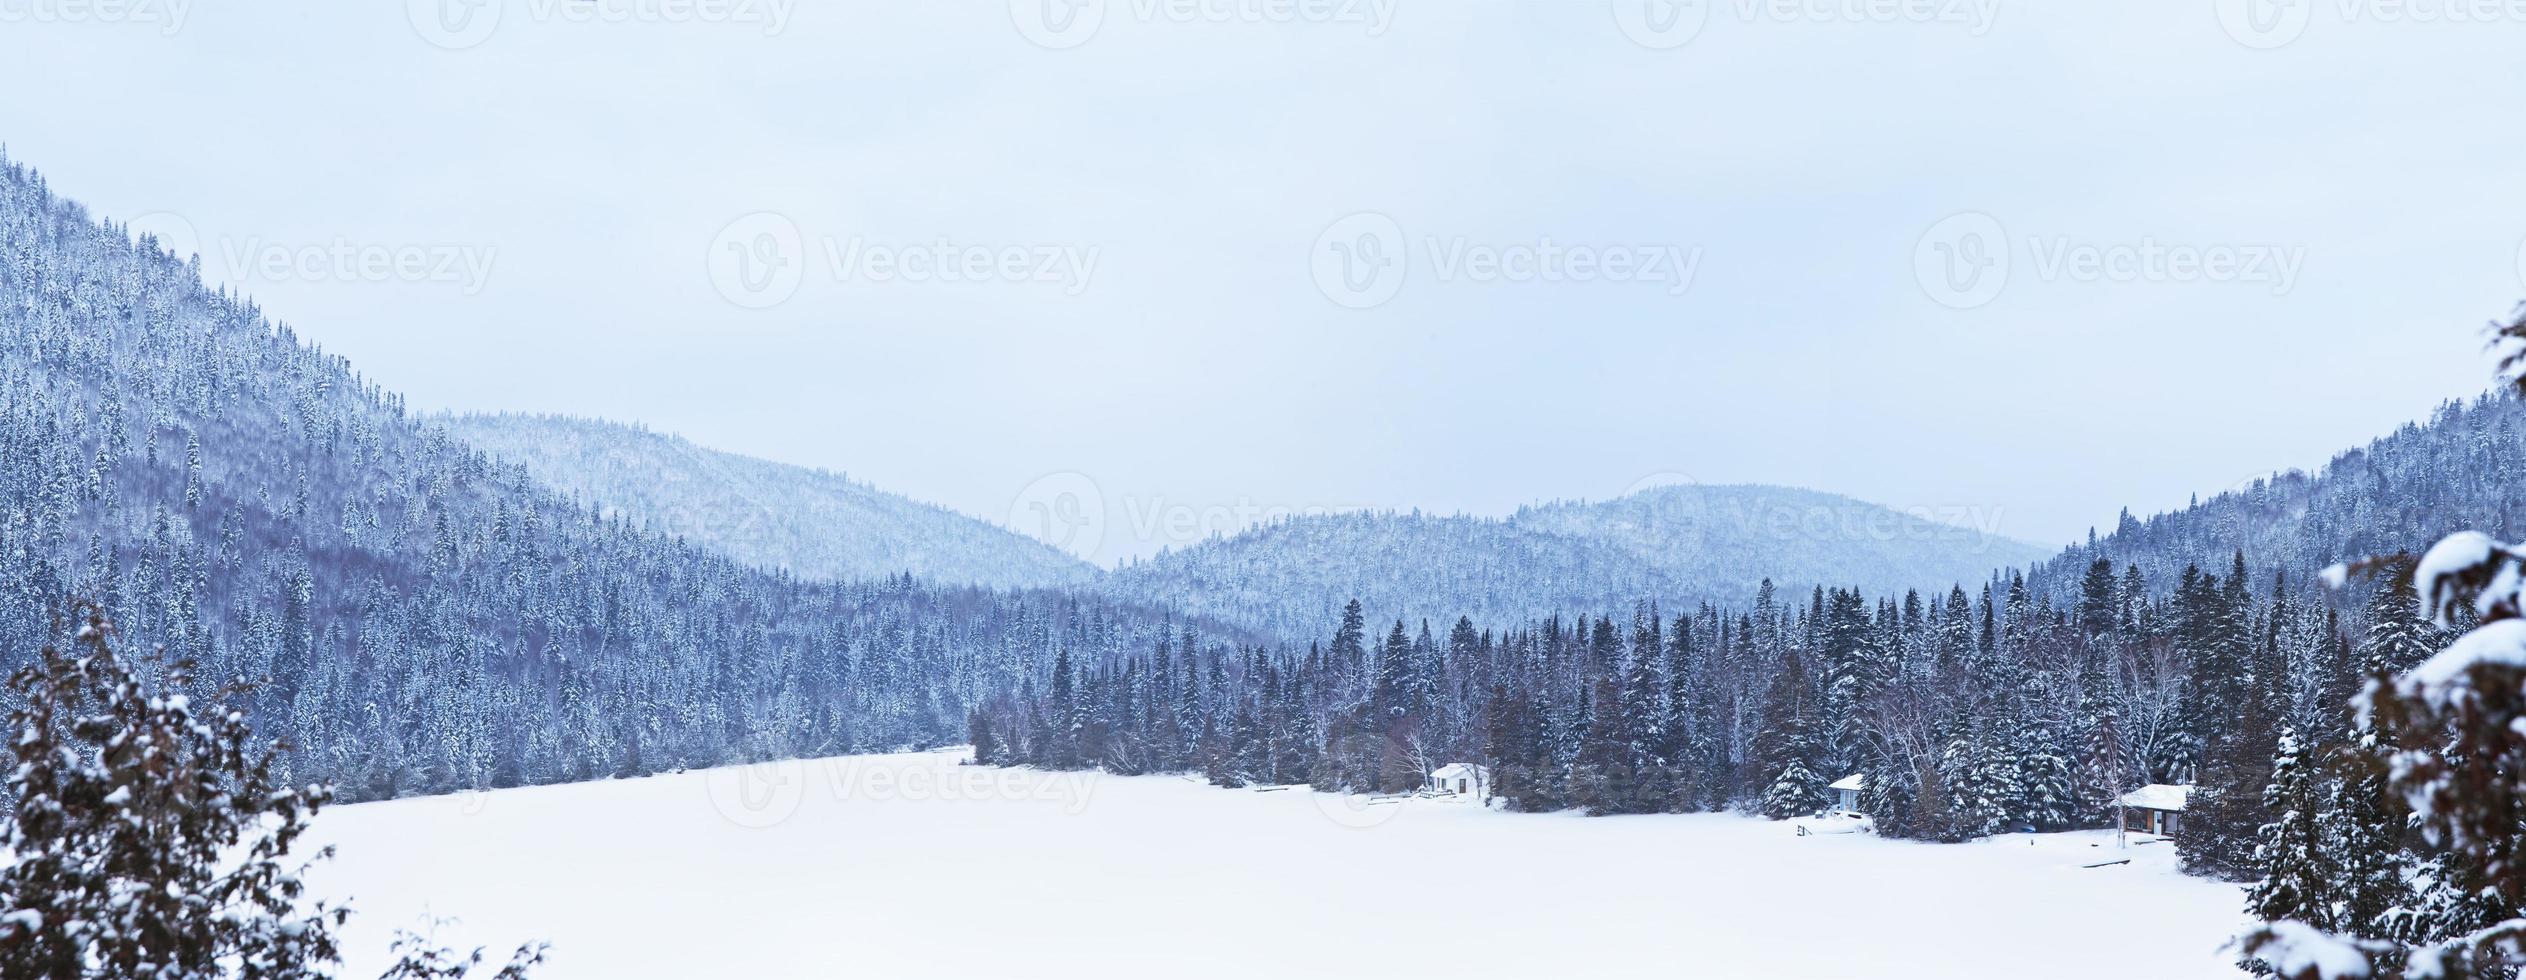 lago congelado durante el invierno foto